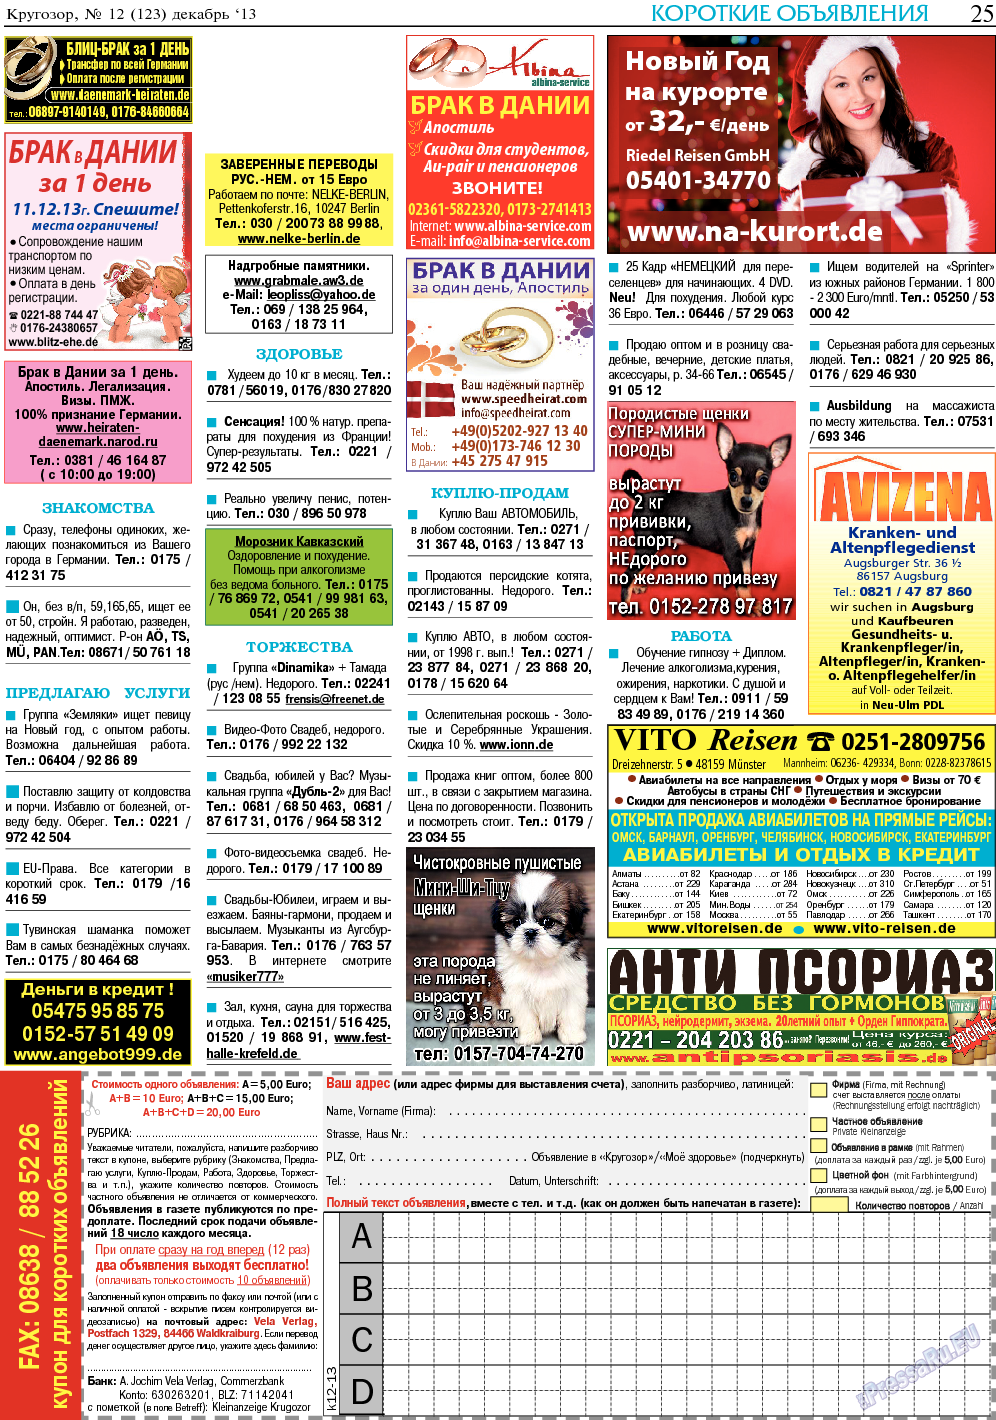 Кругозор, газета. 2013 №12 стр.25